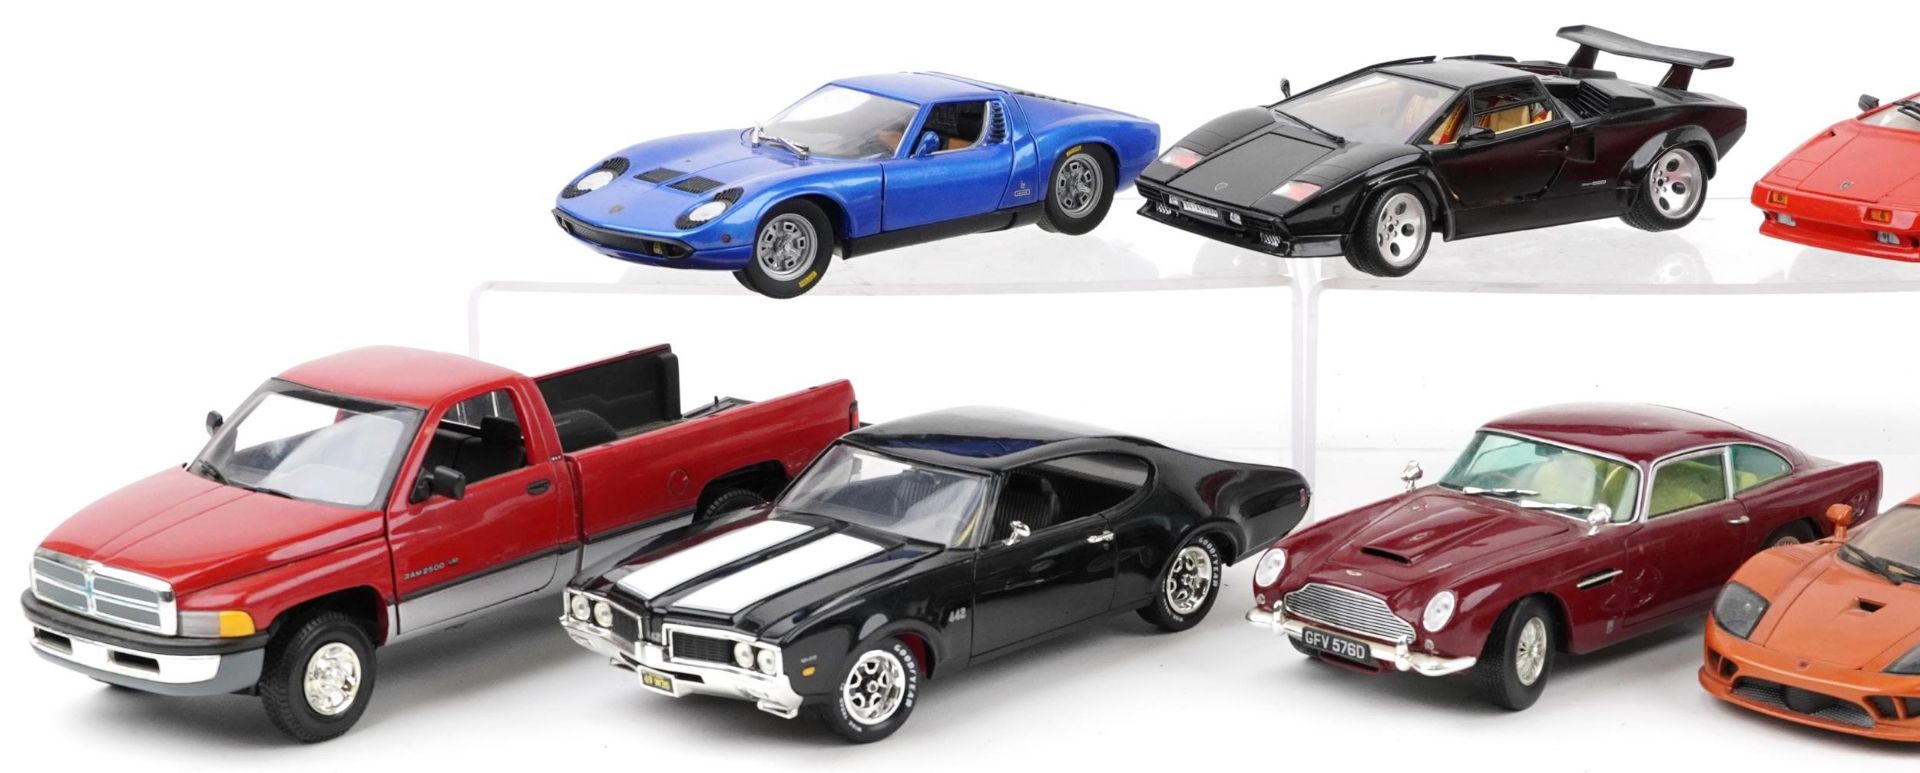 Ten 1:18 scale diecast vehicles including Maisto, Lamborghini Diablo, Lamborghini Countach and Aston - Image 2 of 3